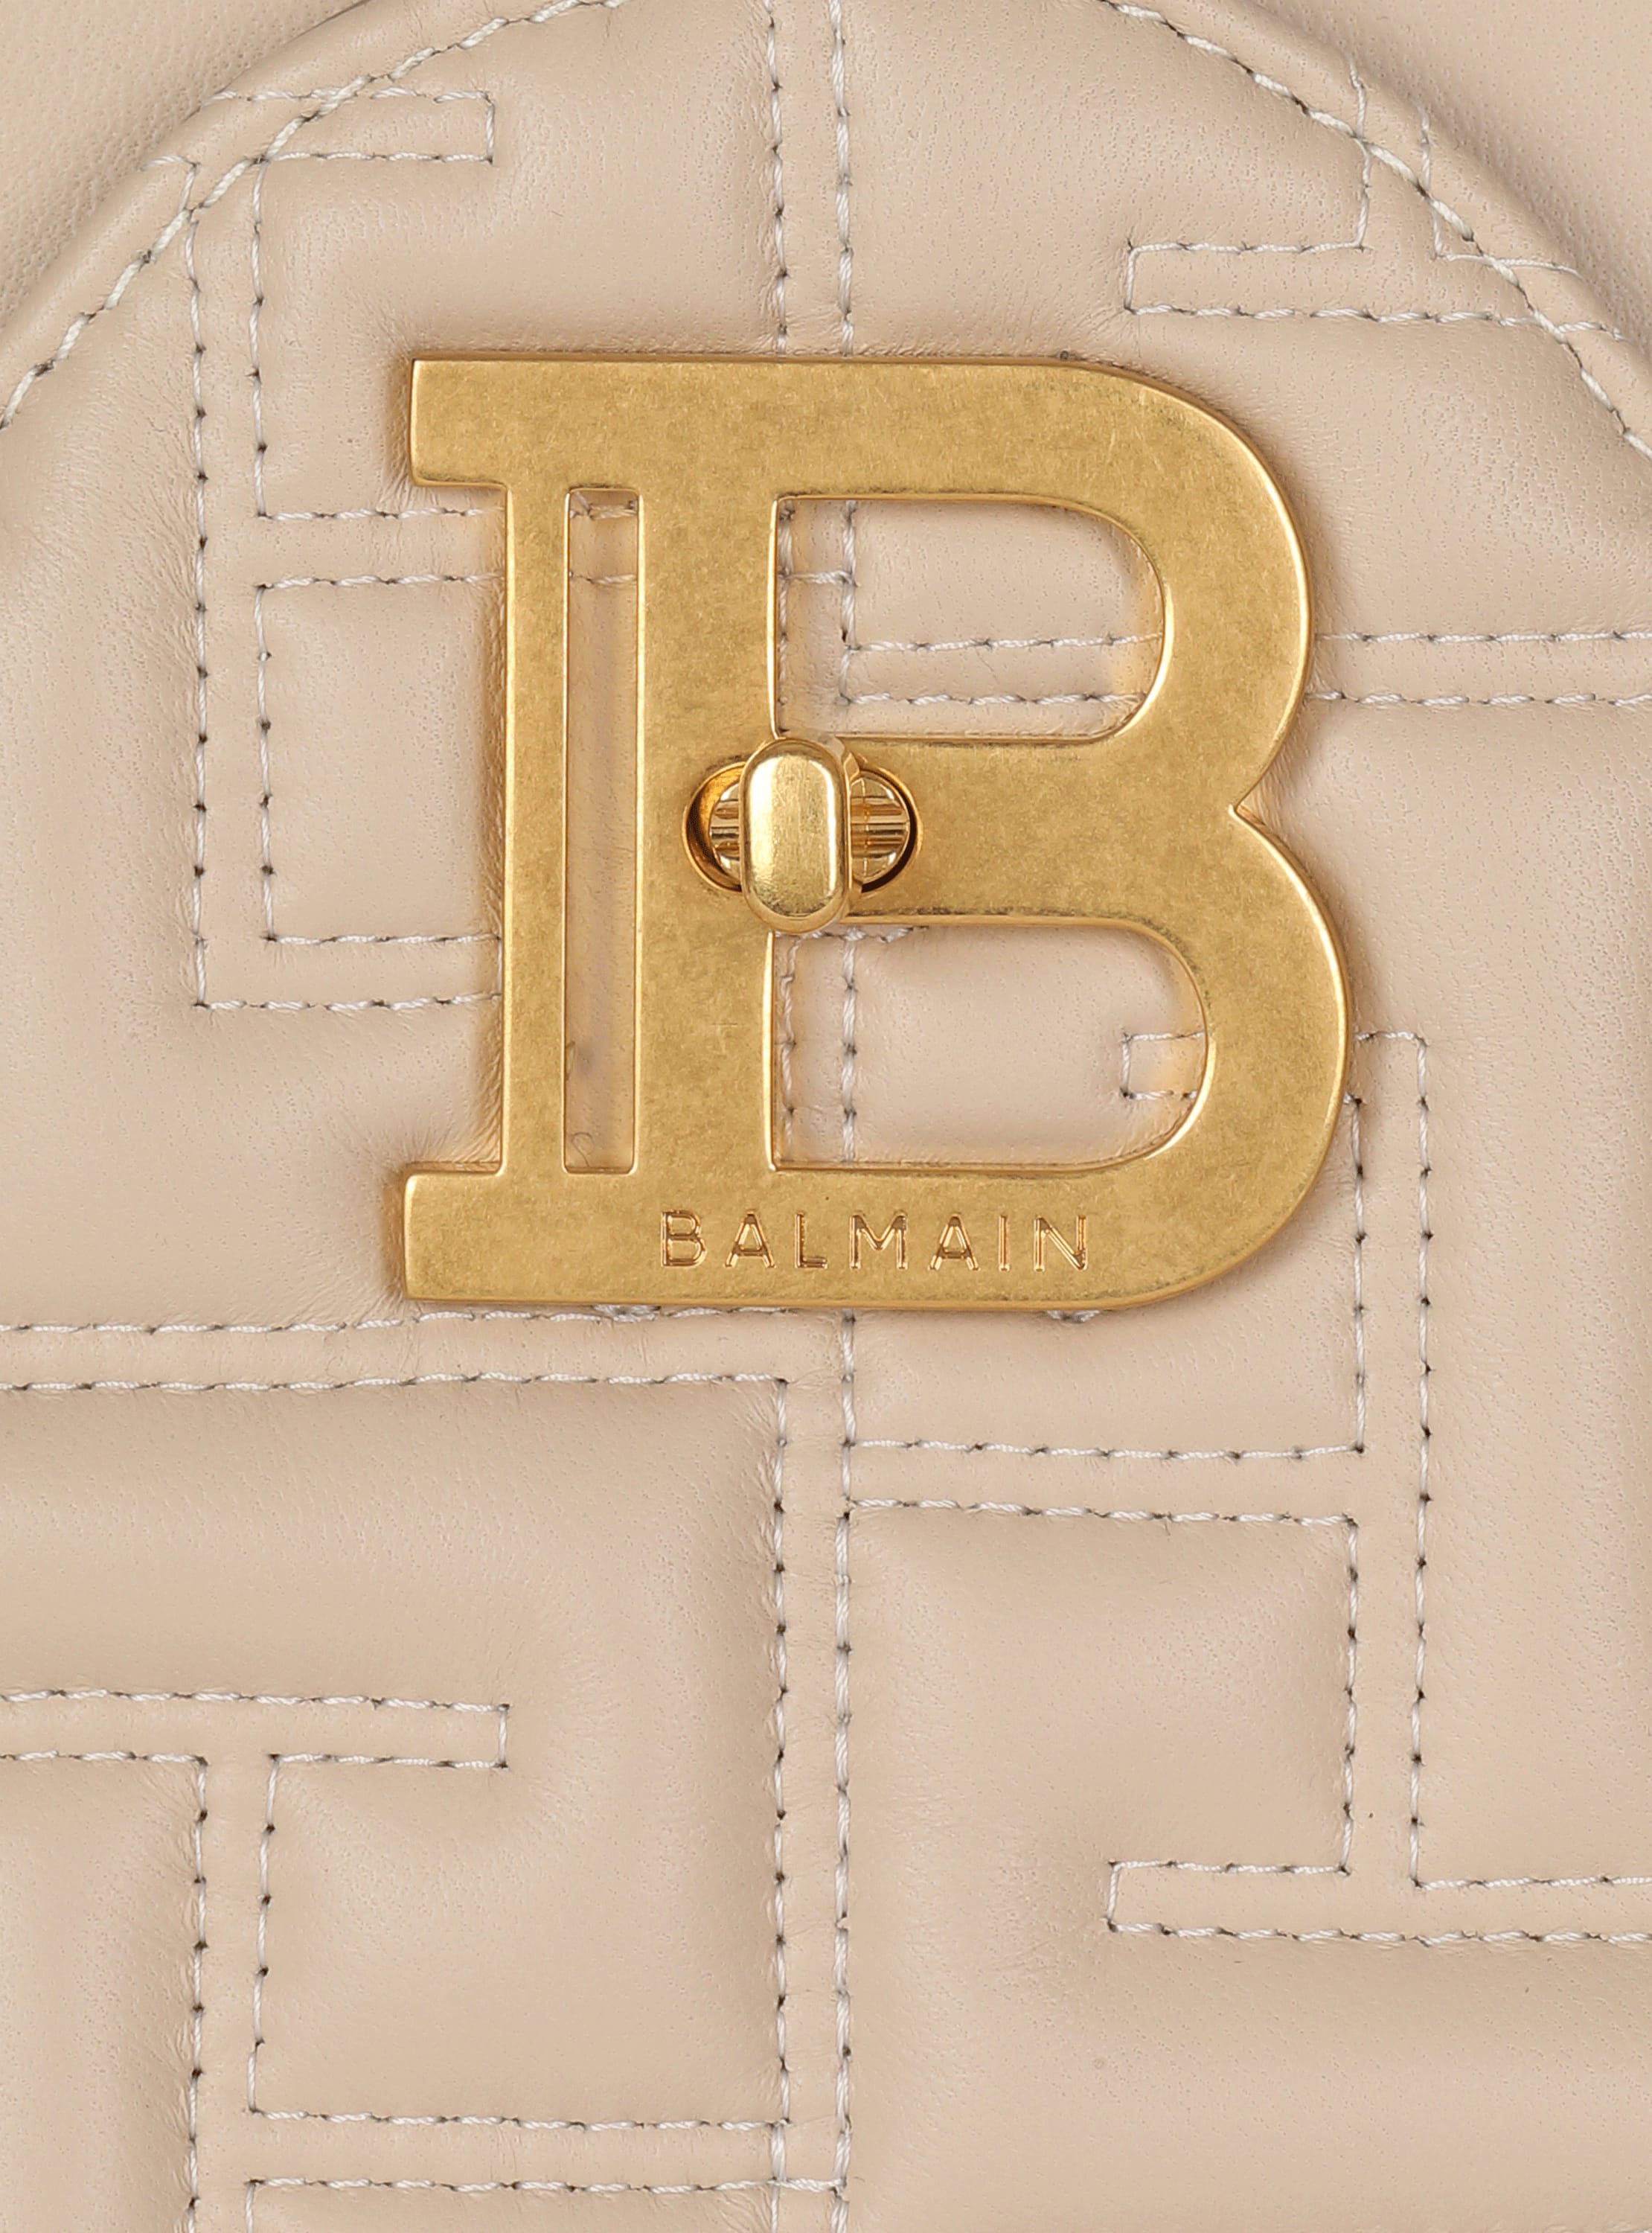 Balmain BBuzz 22 Monogram-Embossed Suede Top-Handle Bag